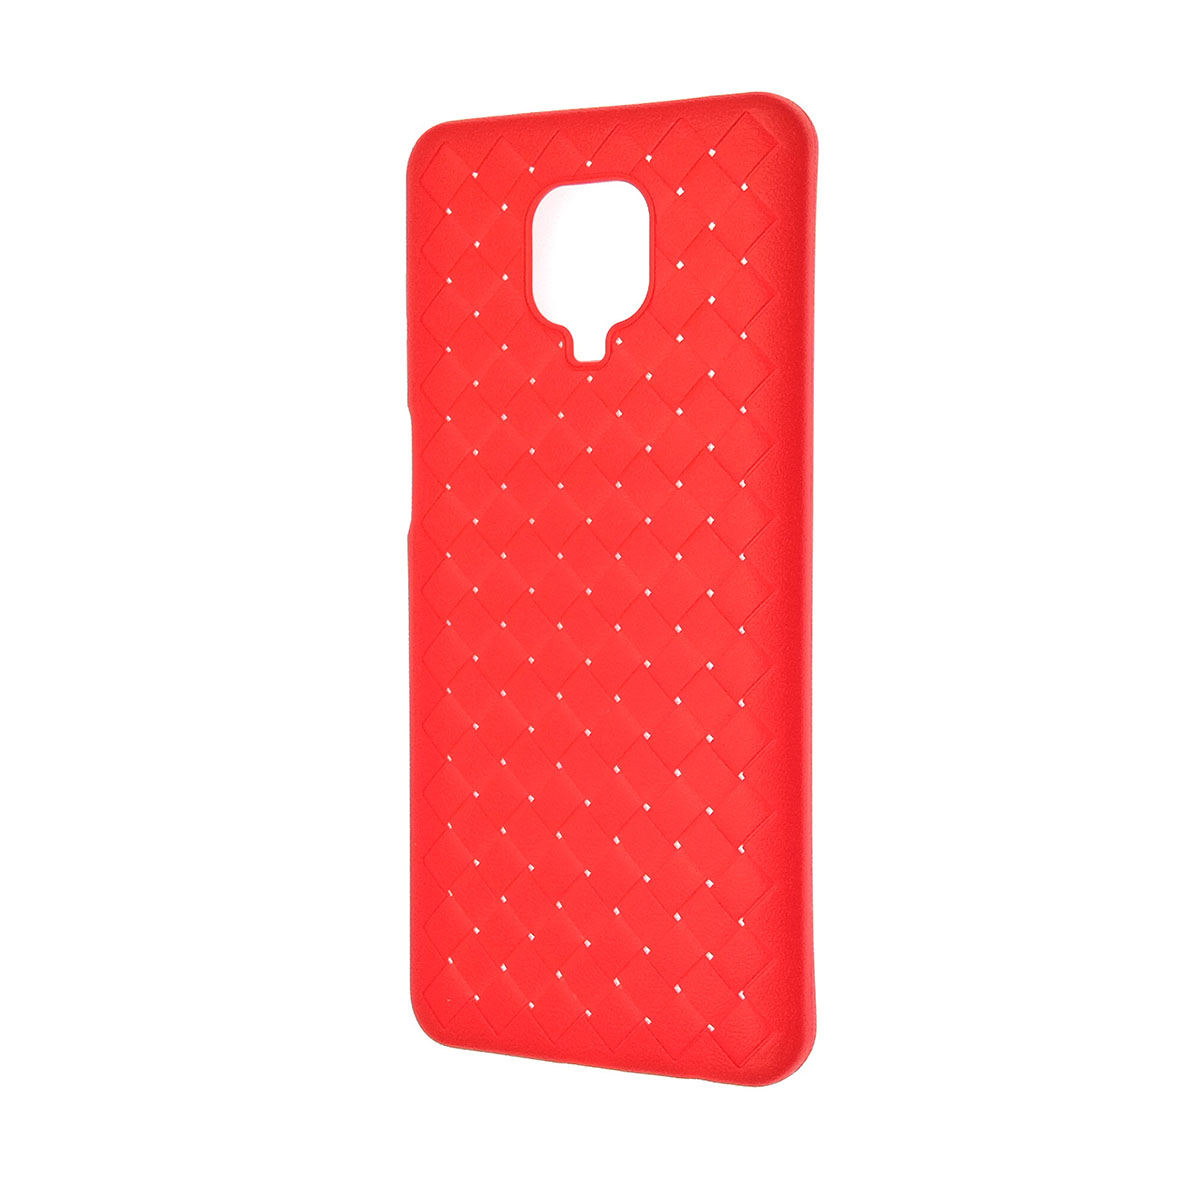 Чехол накладка для XIAOMI Redmi Note 9 Pro, Redmi Note 9S, силикон, плетение, цвет красный.